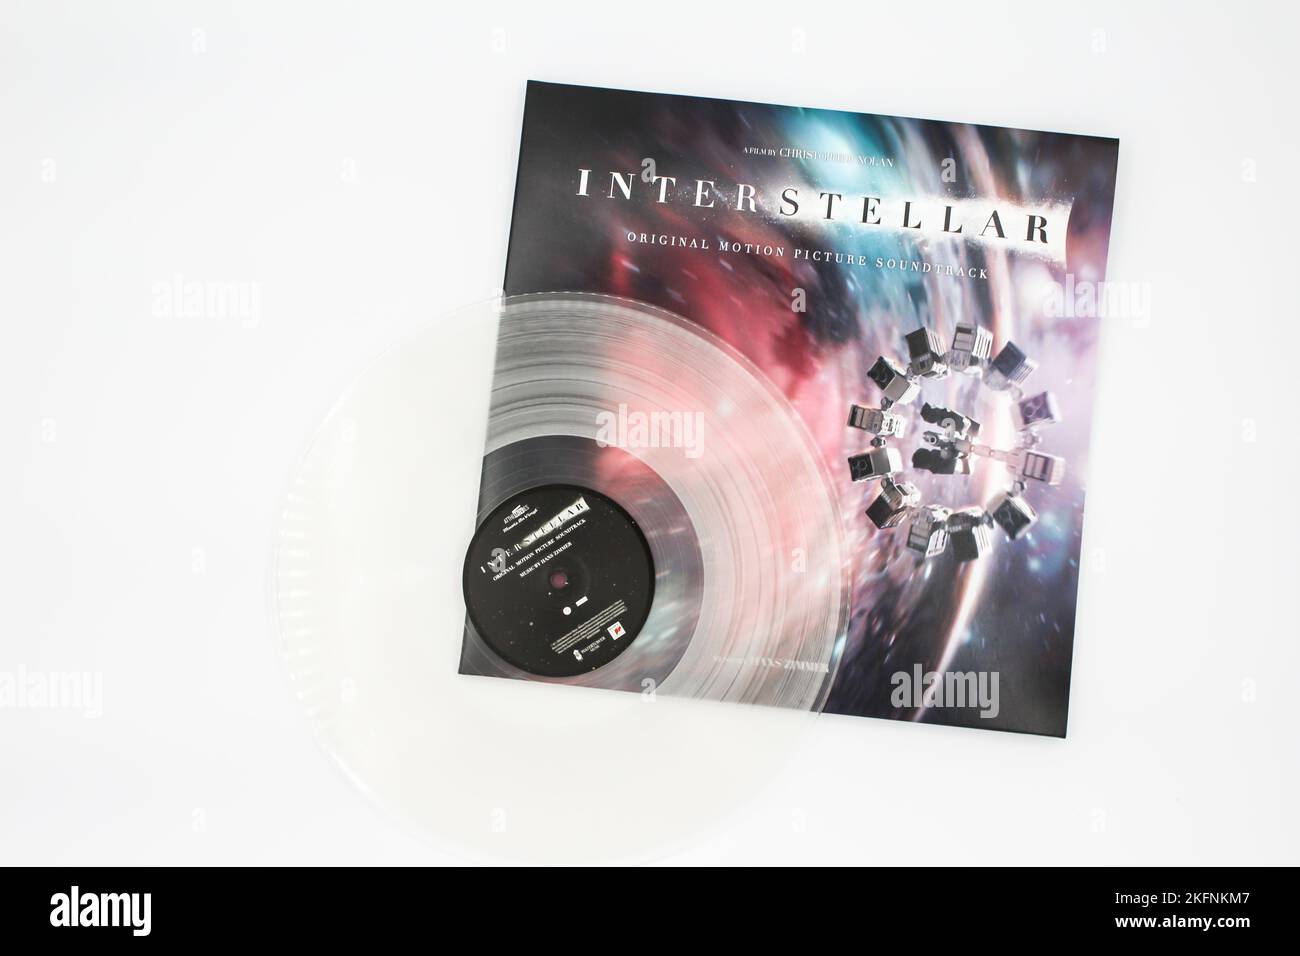 Interstellar Original Motion Picture Soundtrack est l'album composé par Hans Zimmer réalisé par Christopher Nolan. Pochette en vinyle pour album. Banque D'Images